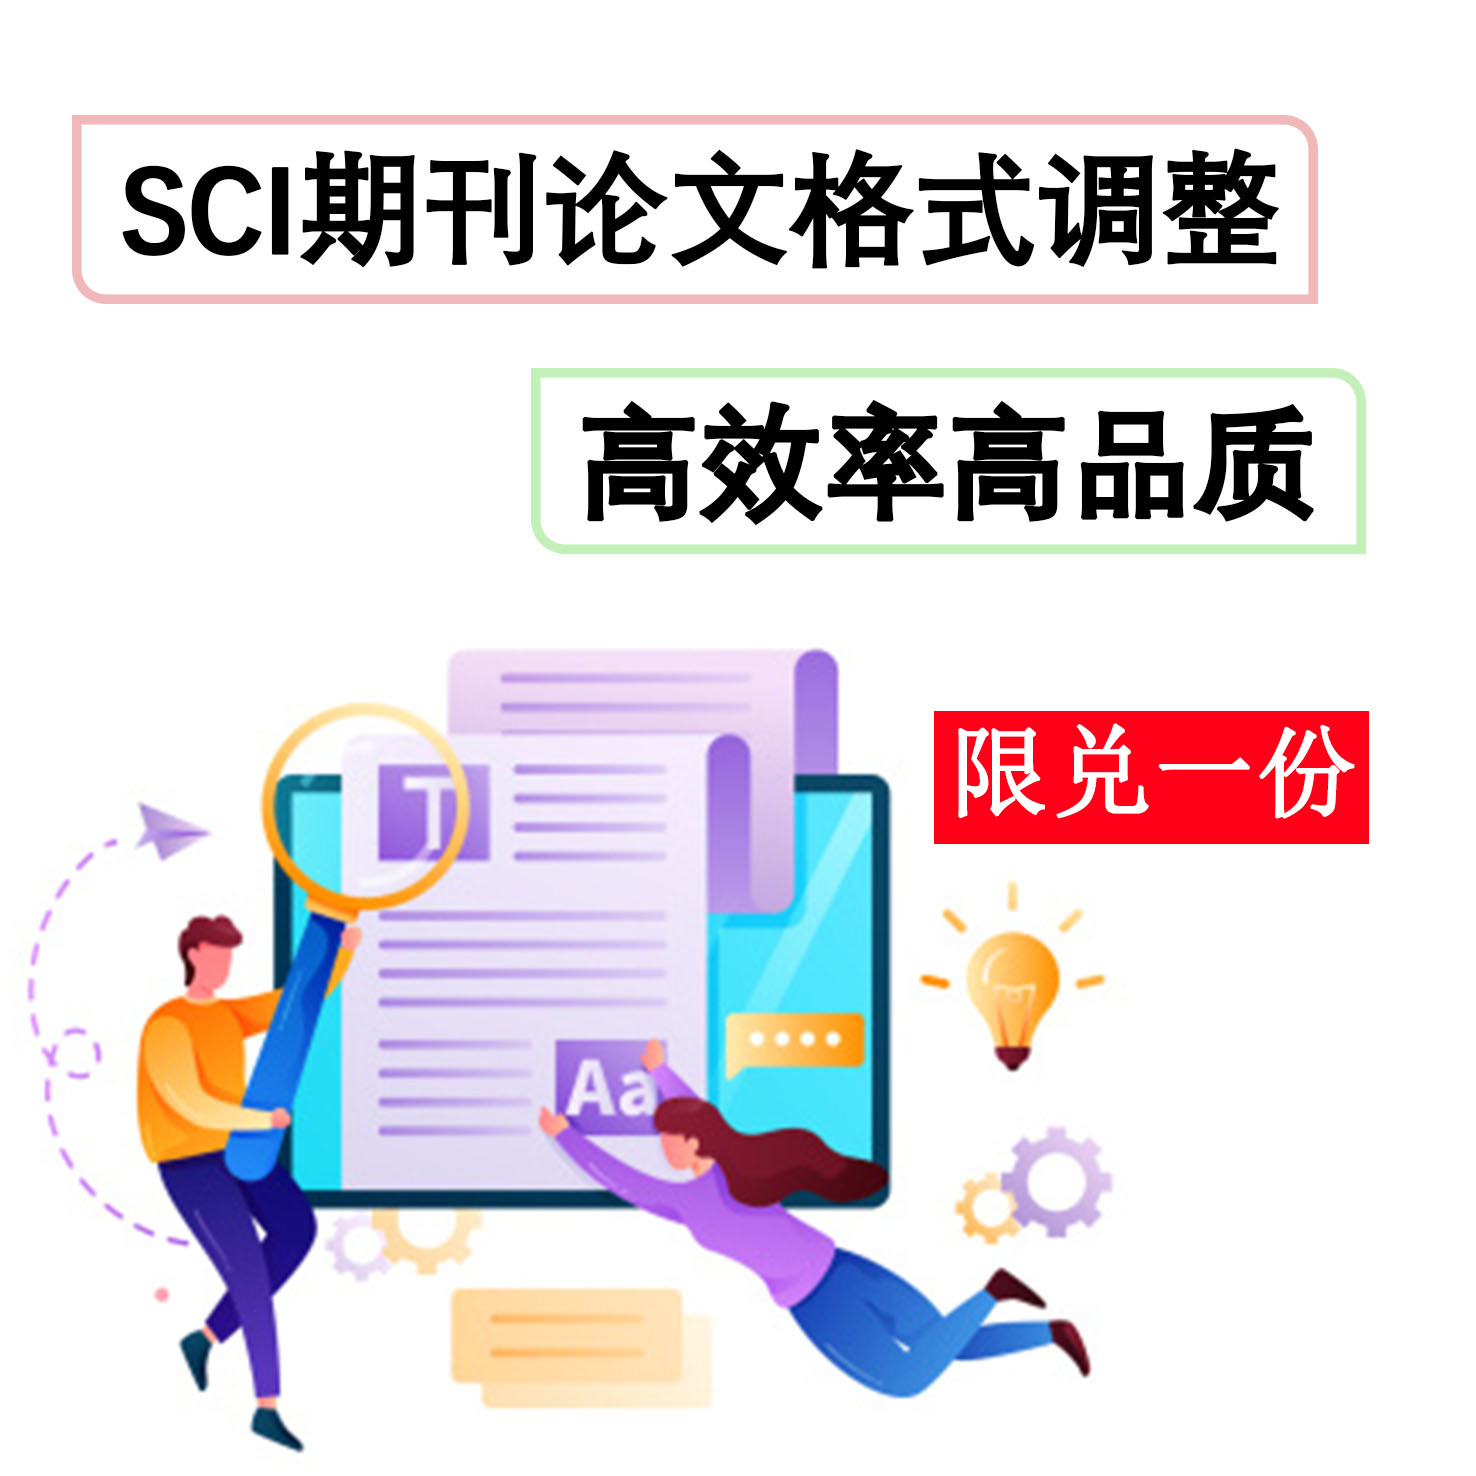 周年庆SCI期刊论文格式调整